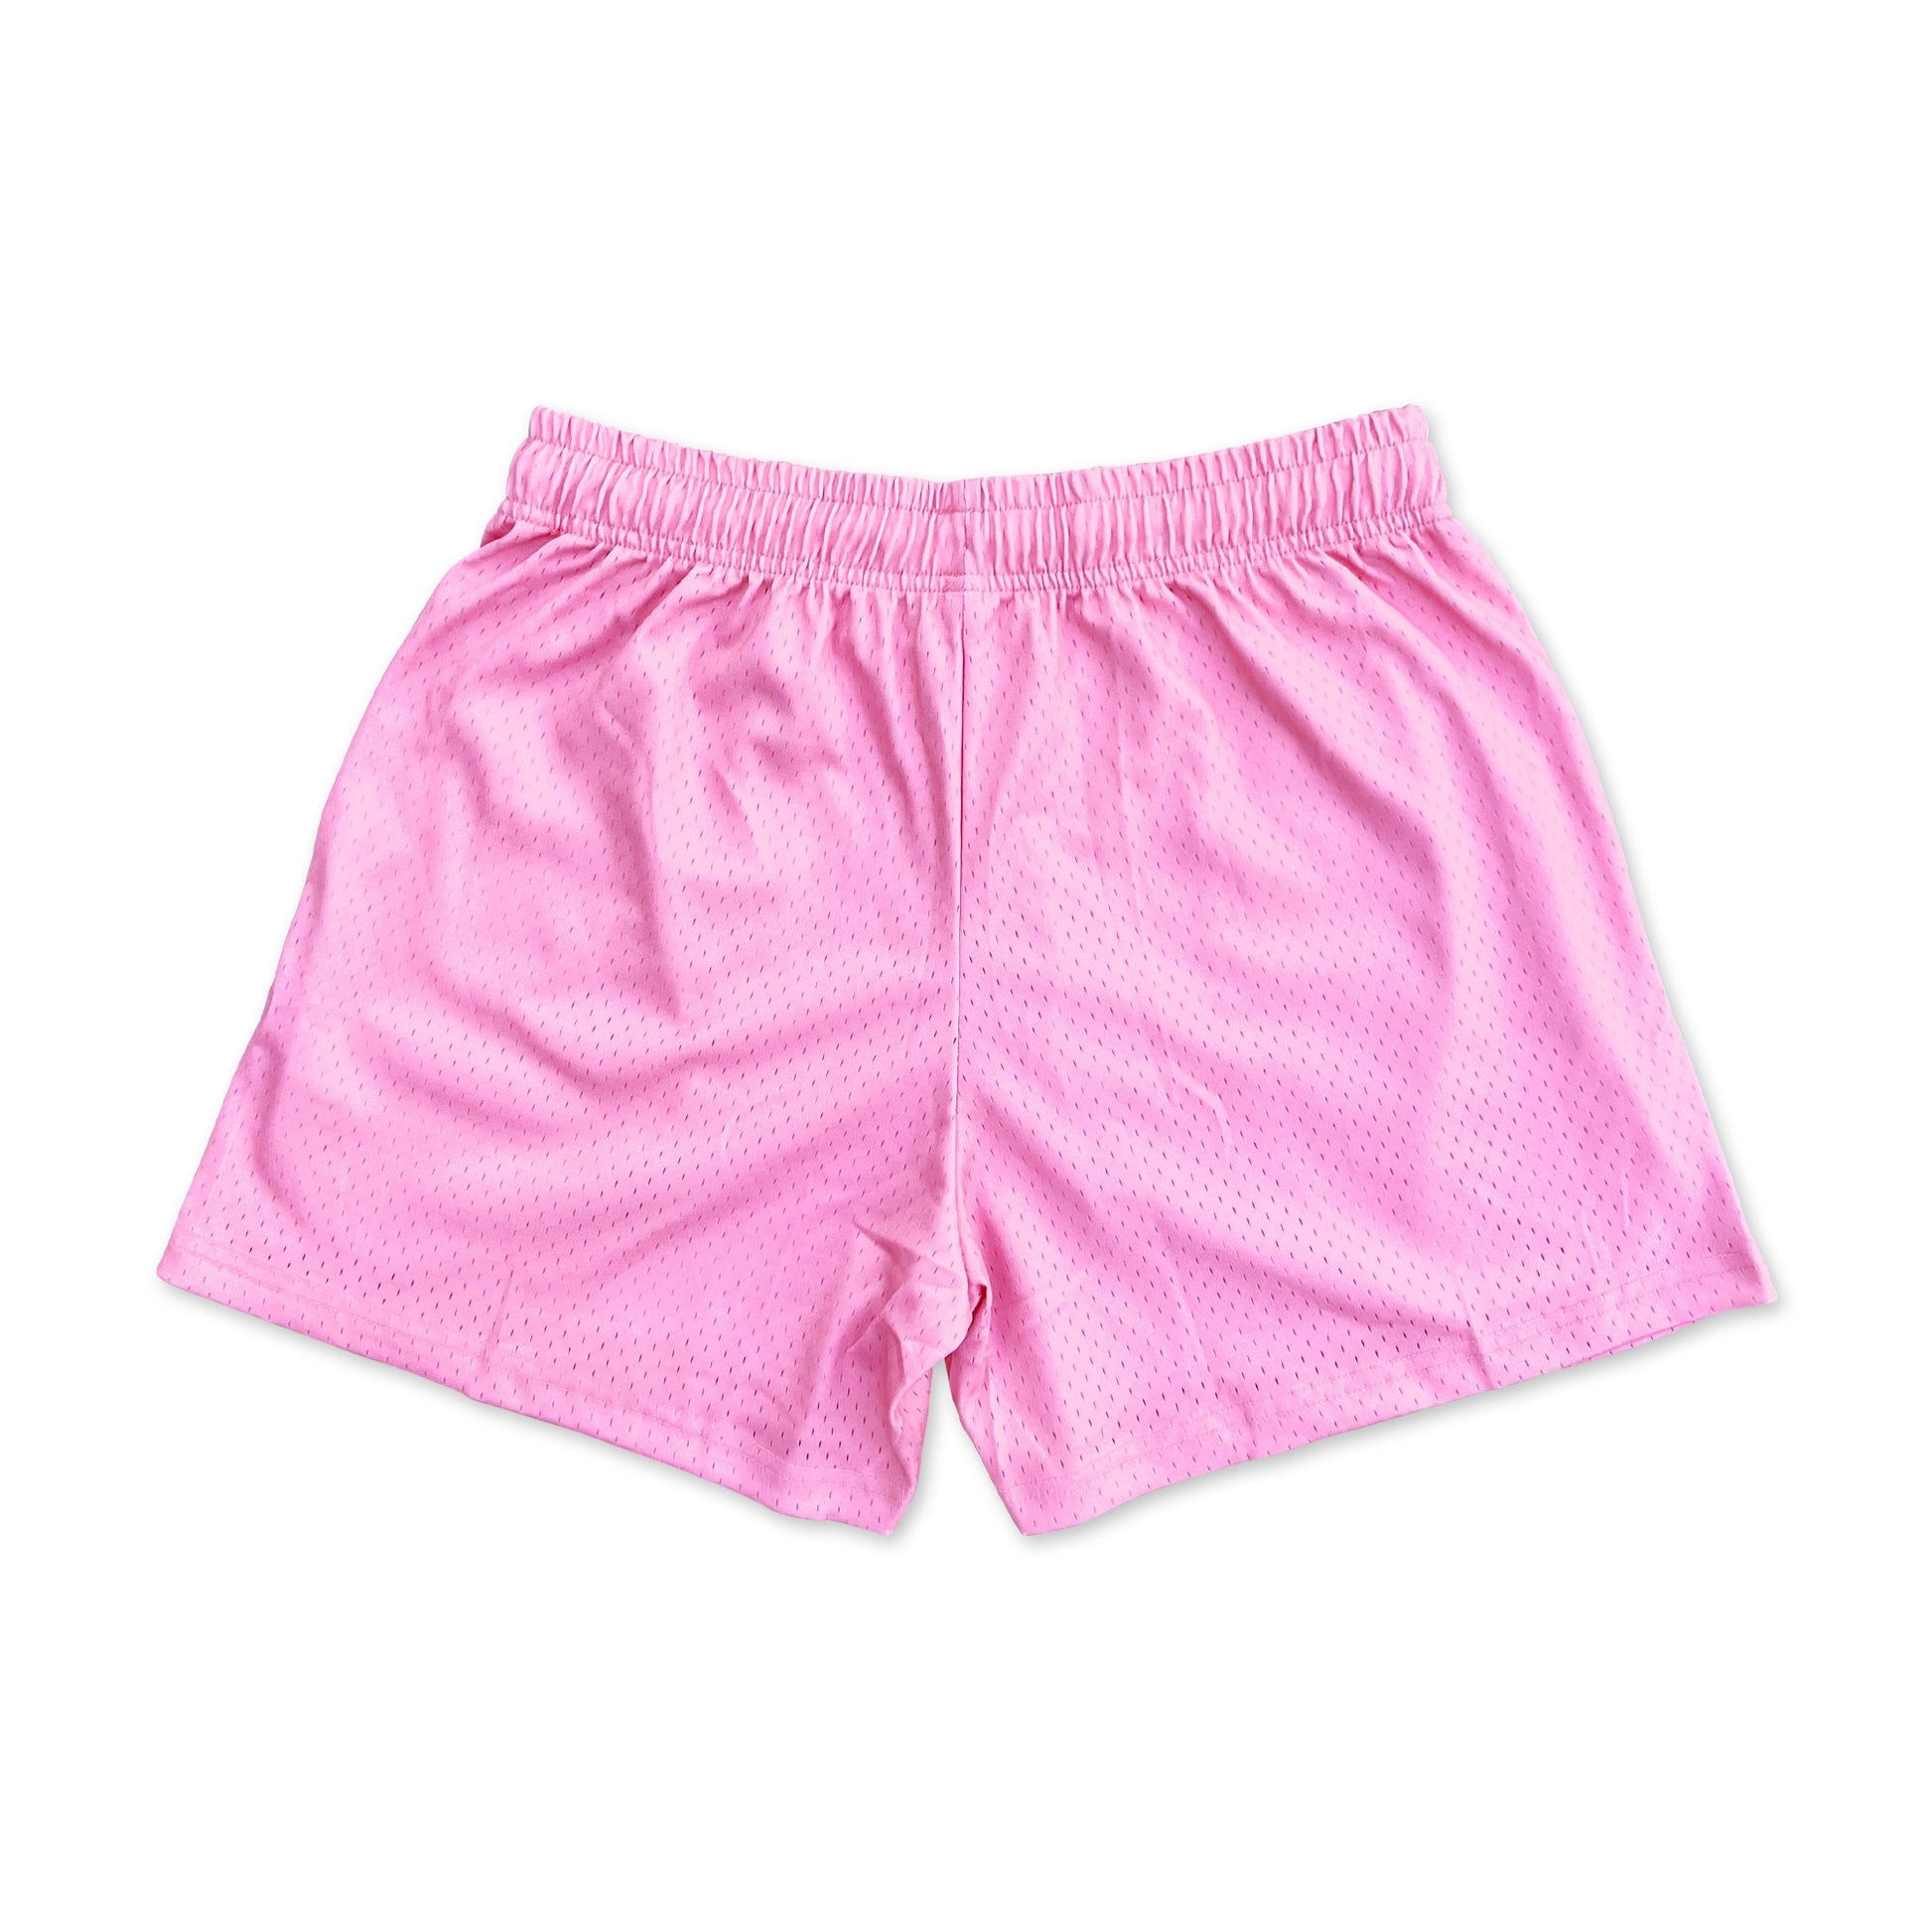 Pink - Premium Mesh JJ Shorts - 5 Inch Inseam - Vintage Gym